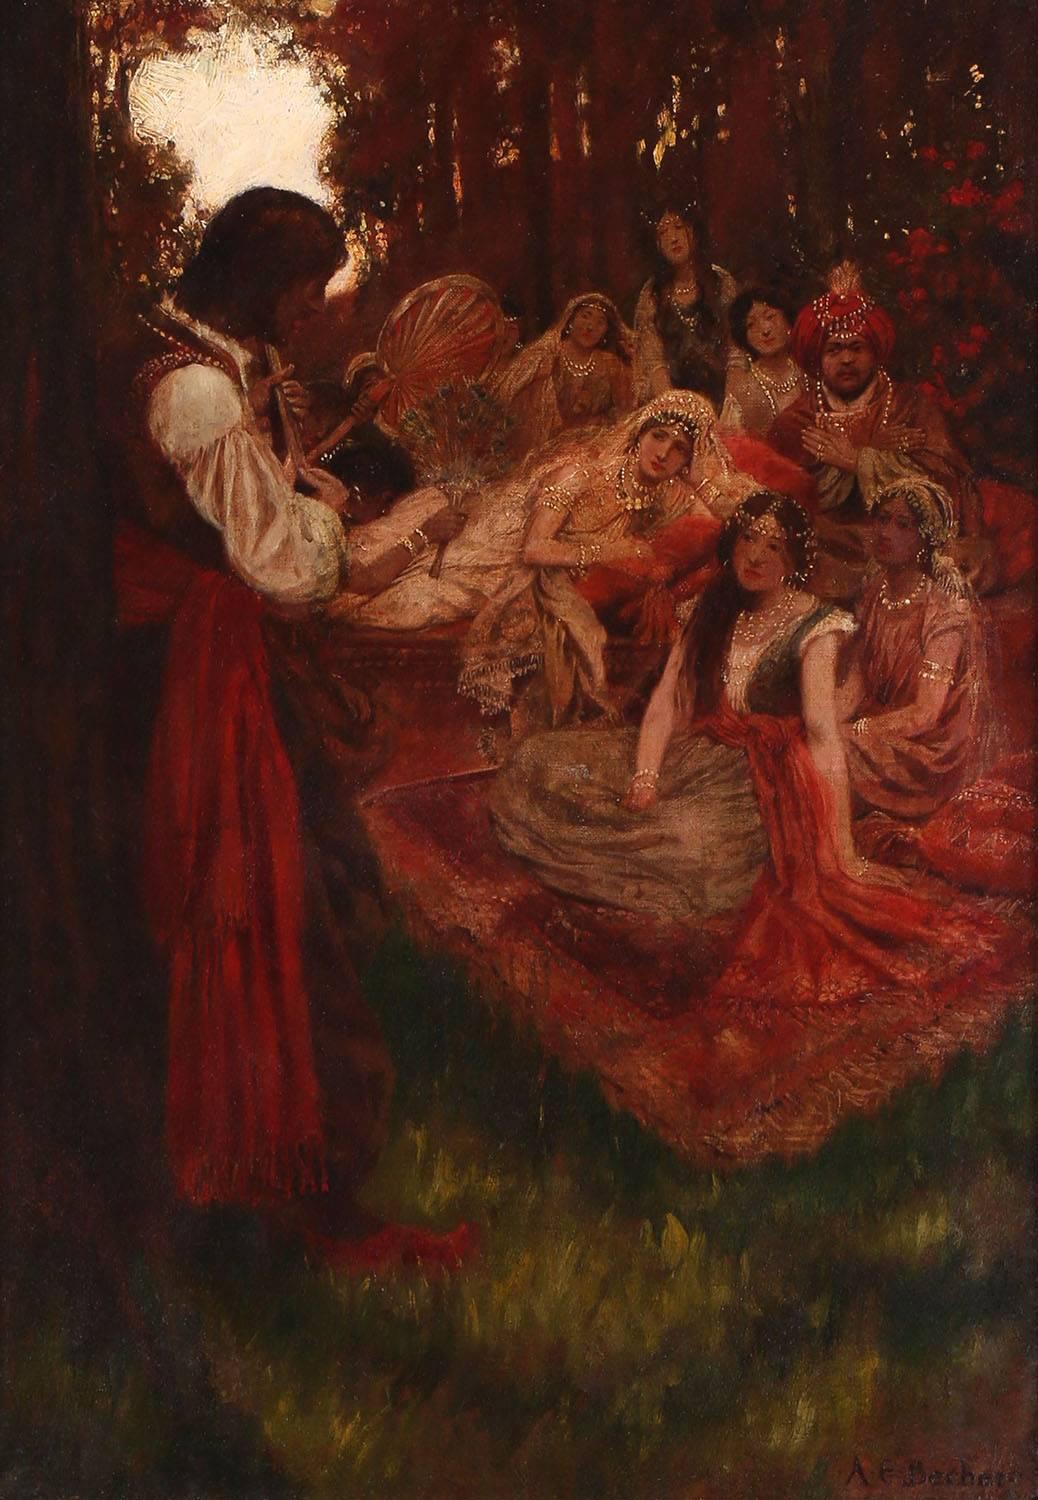 Minstrel Entertains a Harem - Painting by Arthur E. Becher